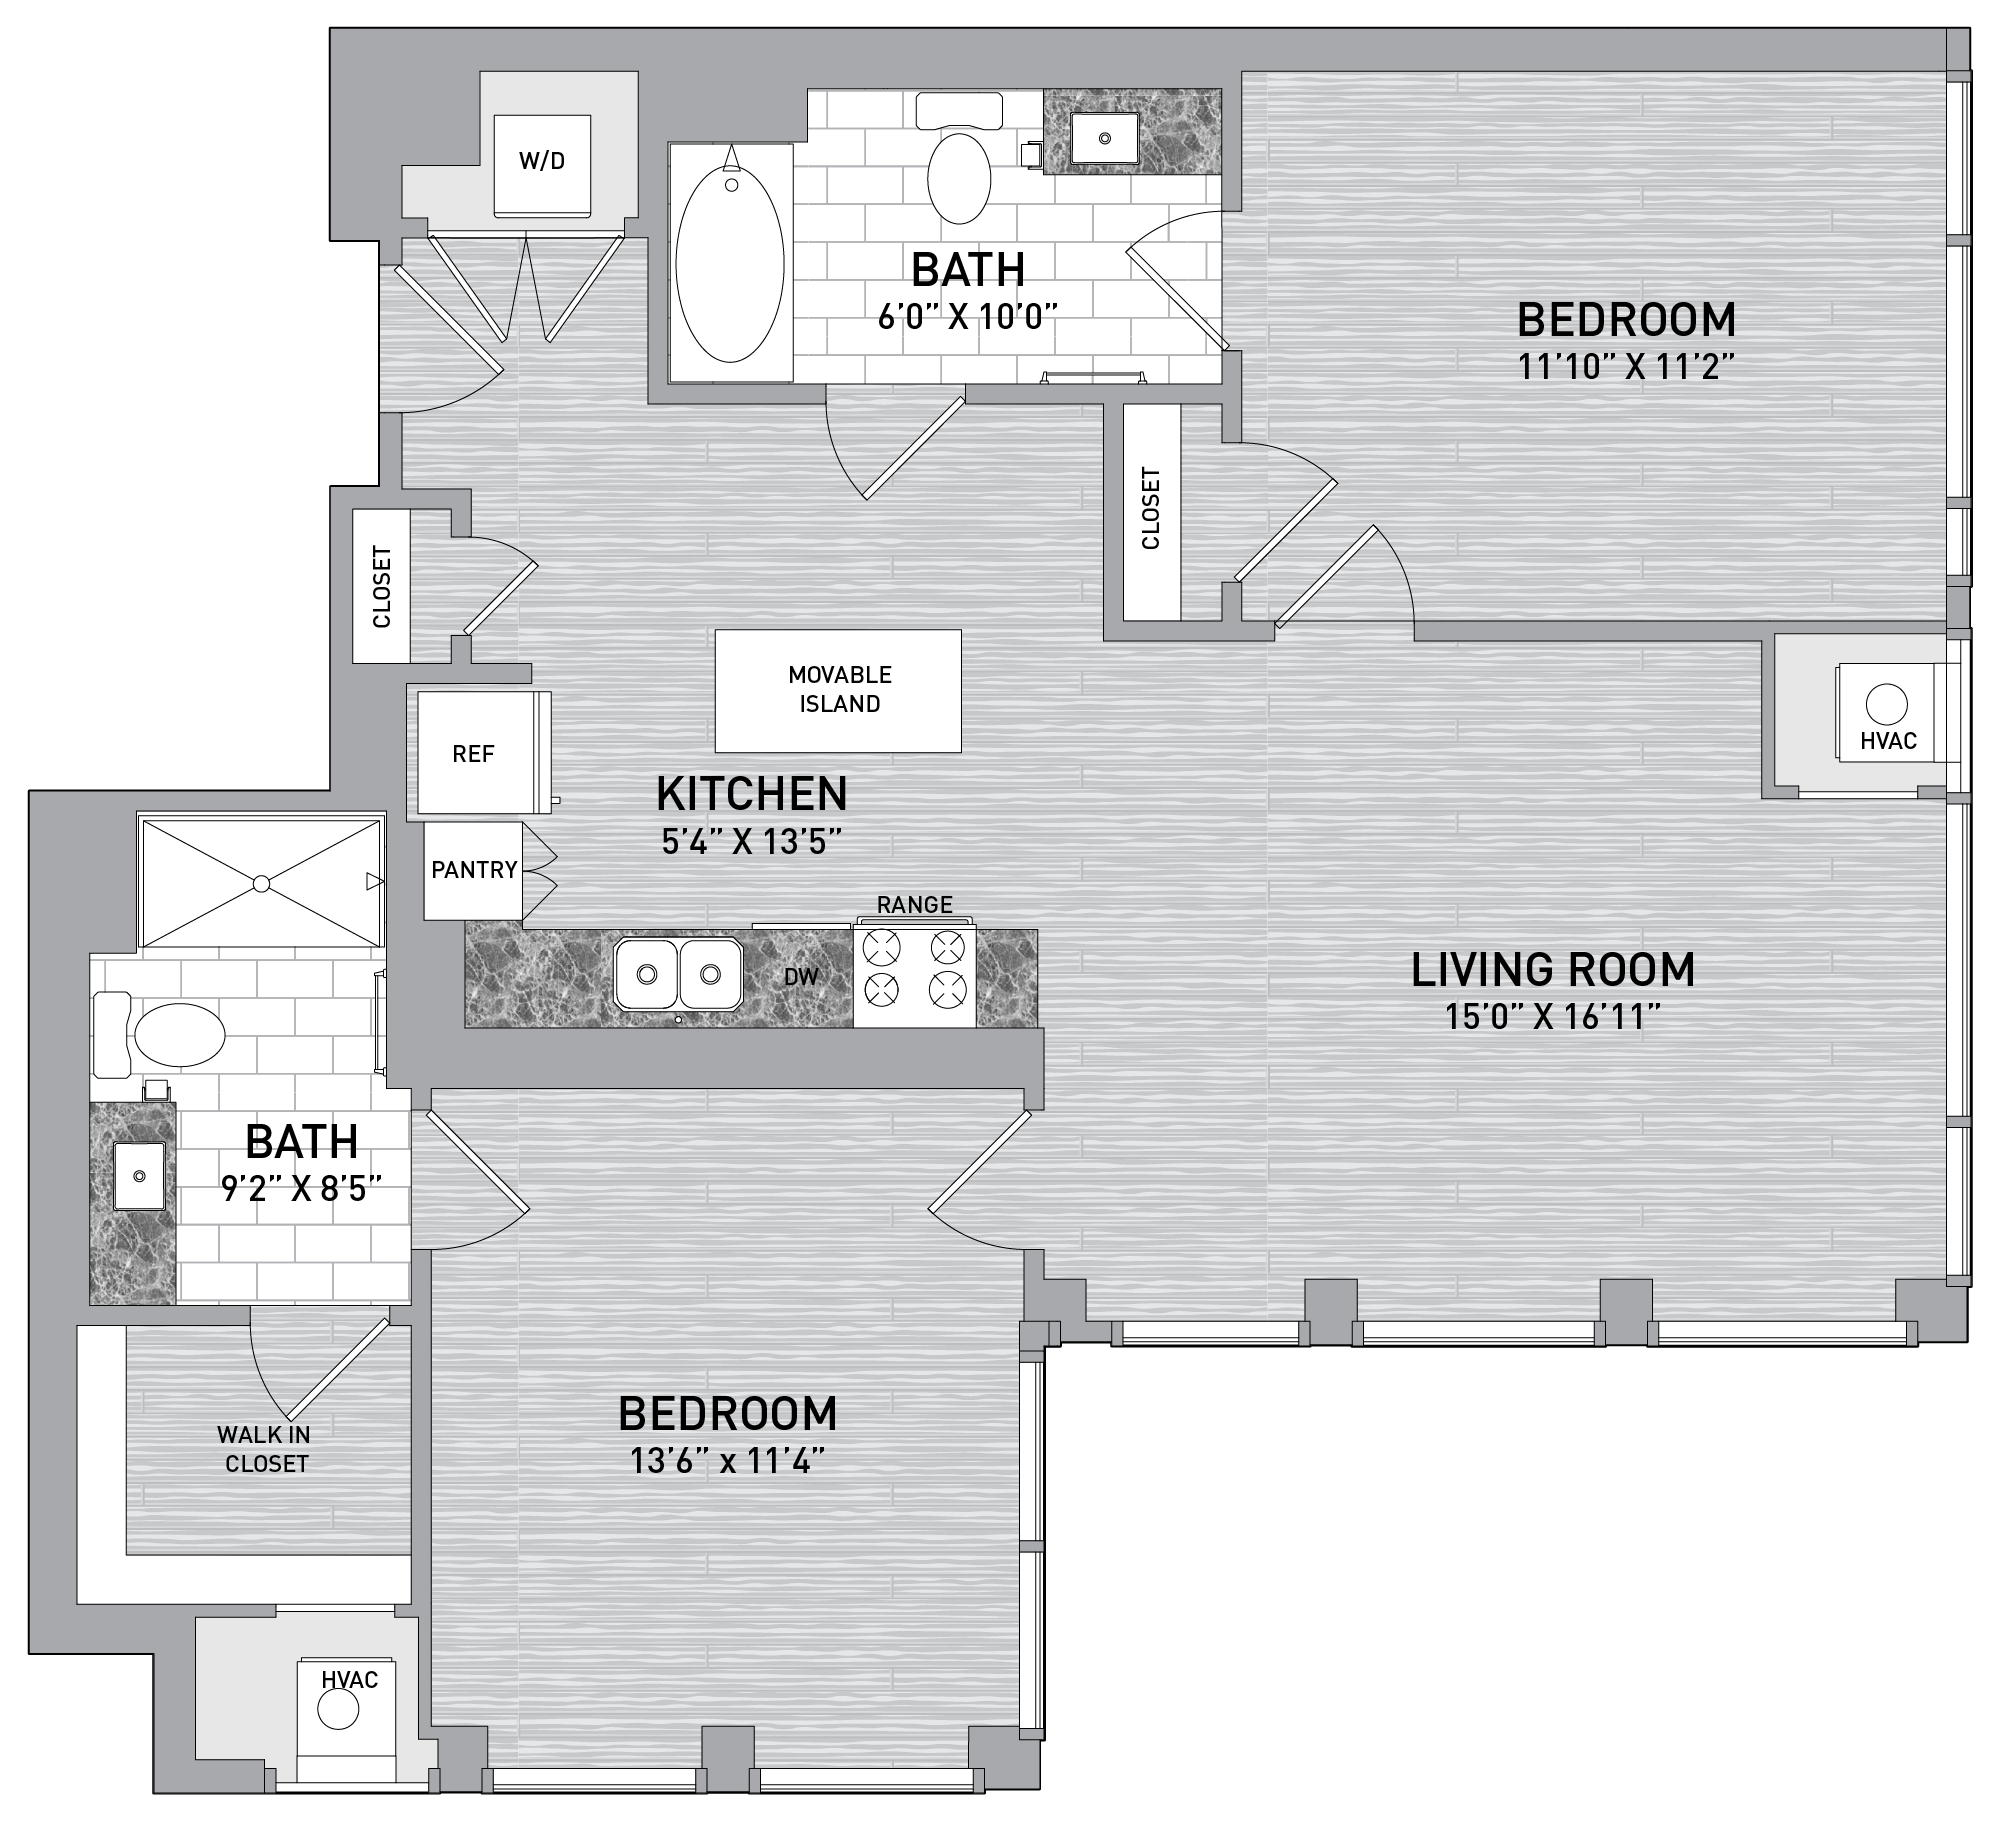 floorplan image of unit id 0501